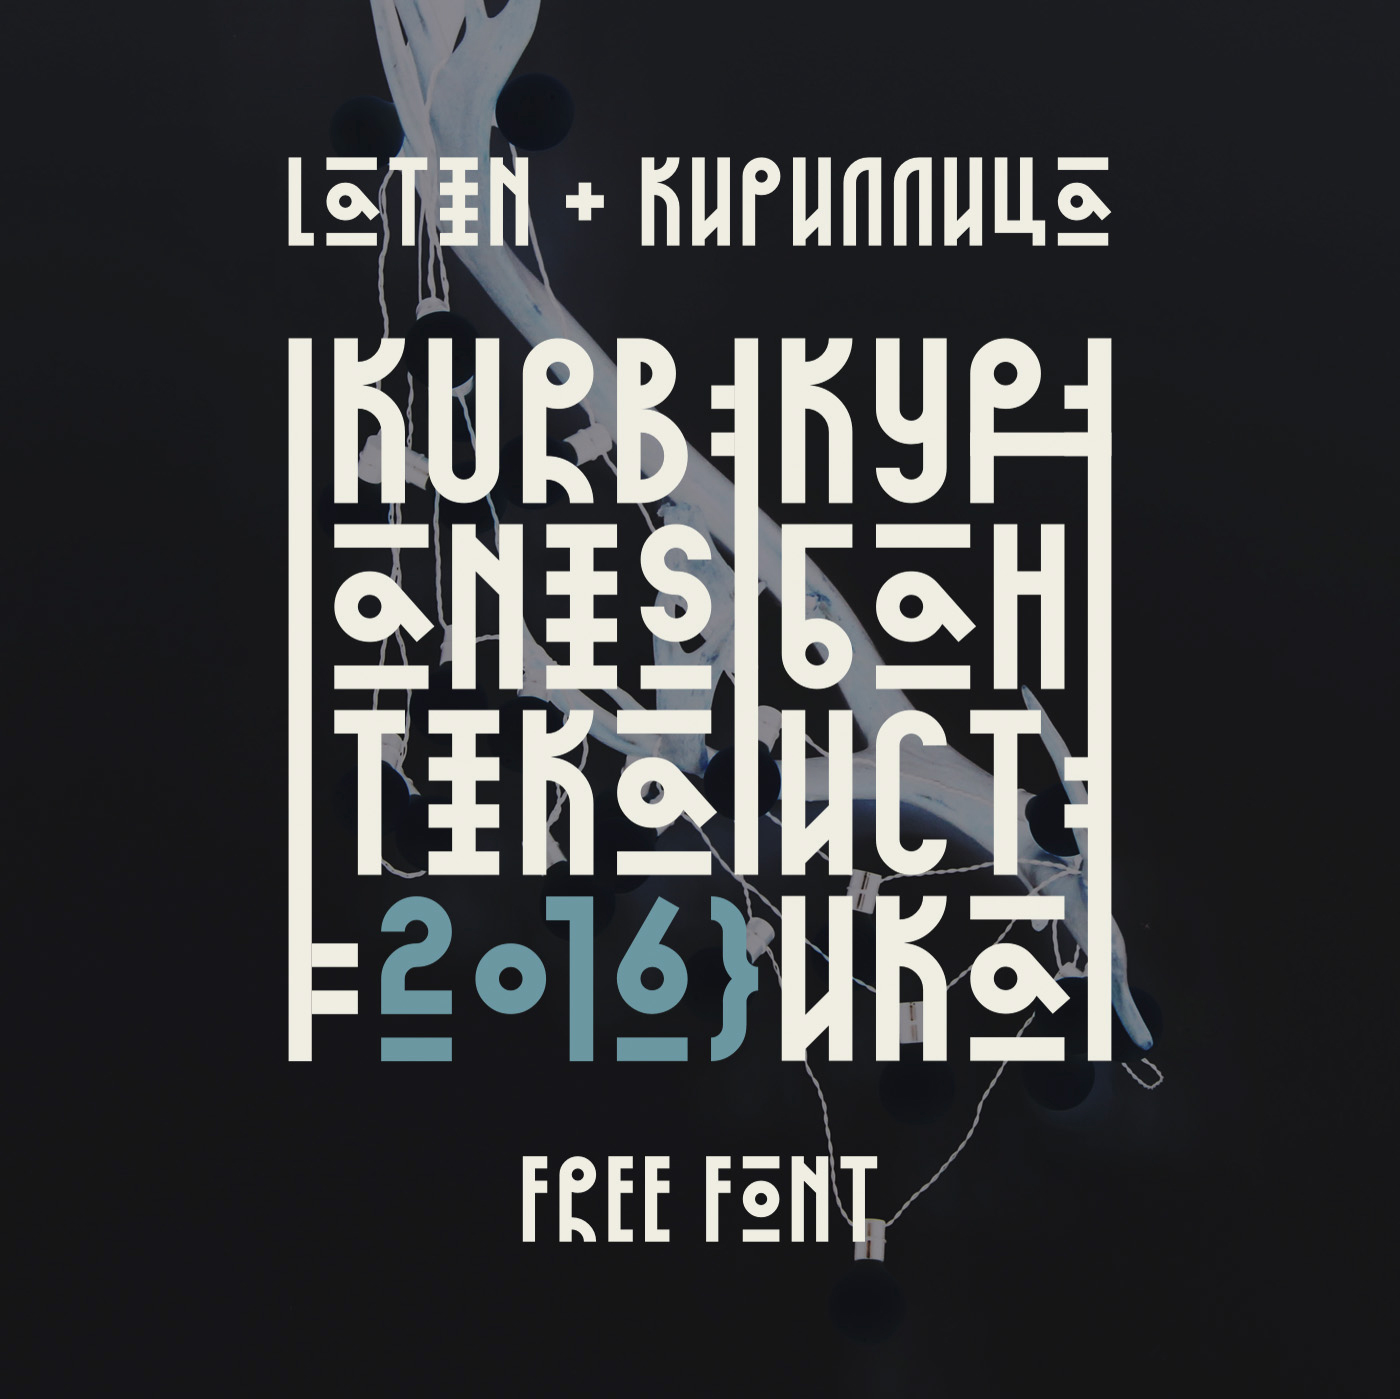 free-font